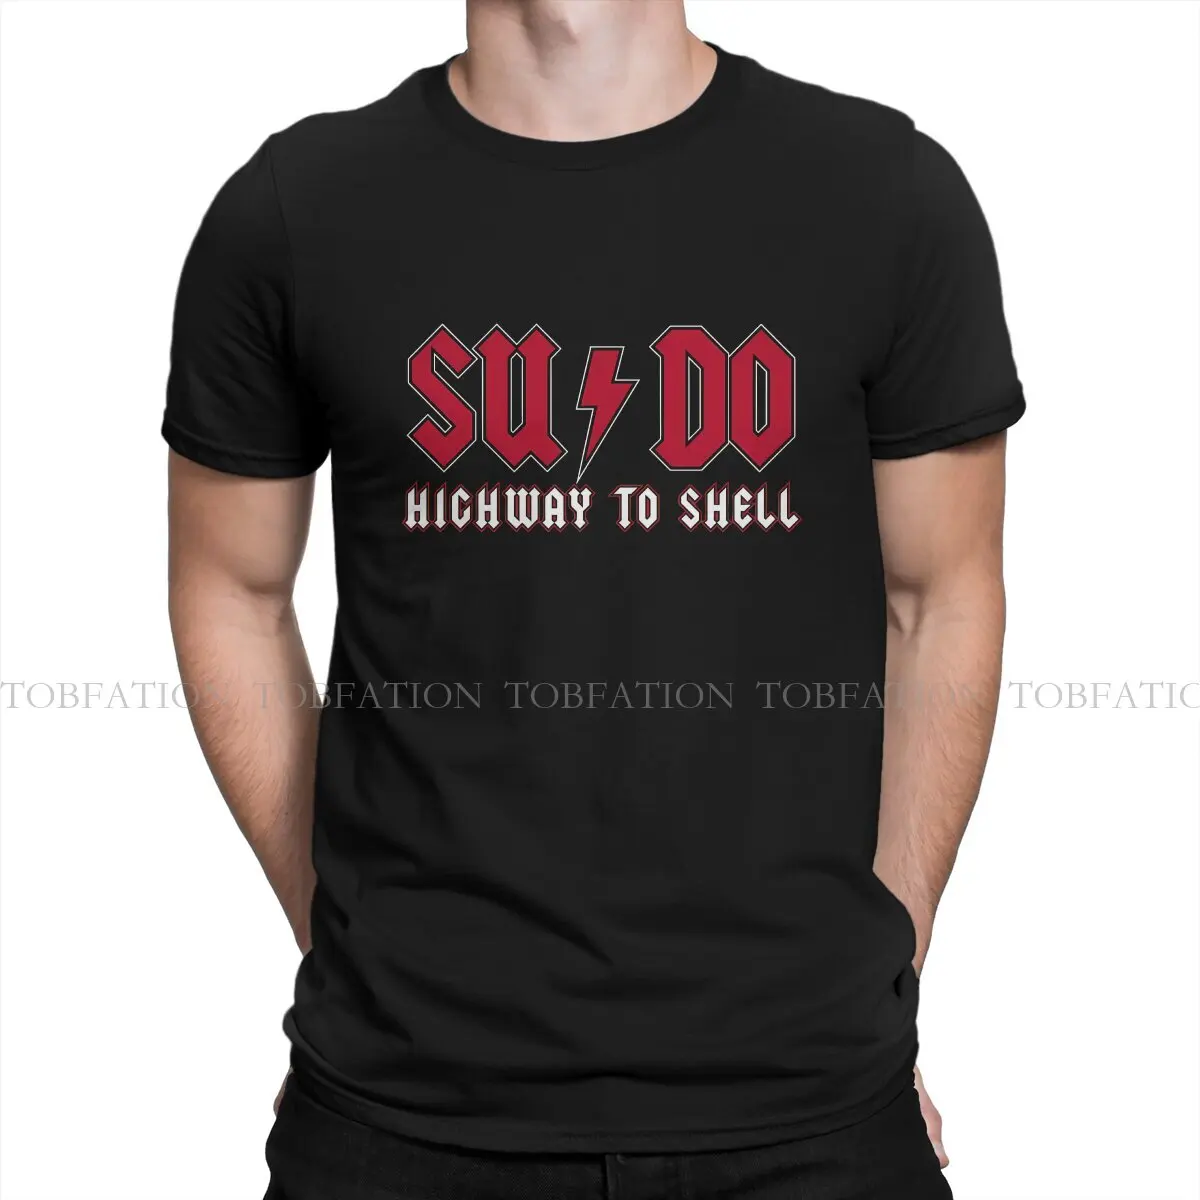 

Операционная система Linux, Мужская футболка с надписью «Highway to Shell», индивидуальная футболка из 100% хлопка, оригинальная хипстерская уличная одежда